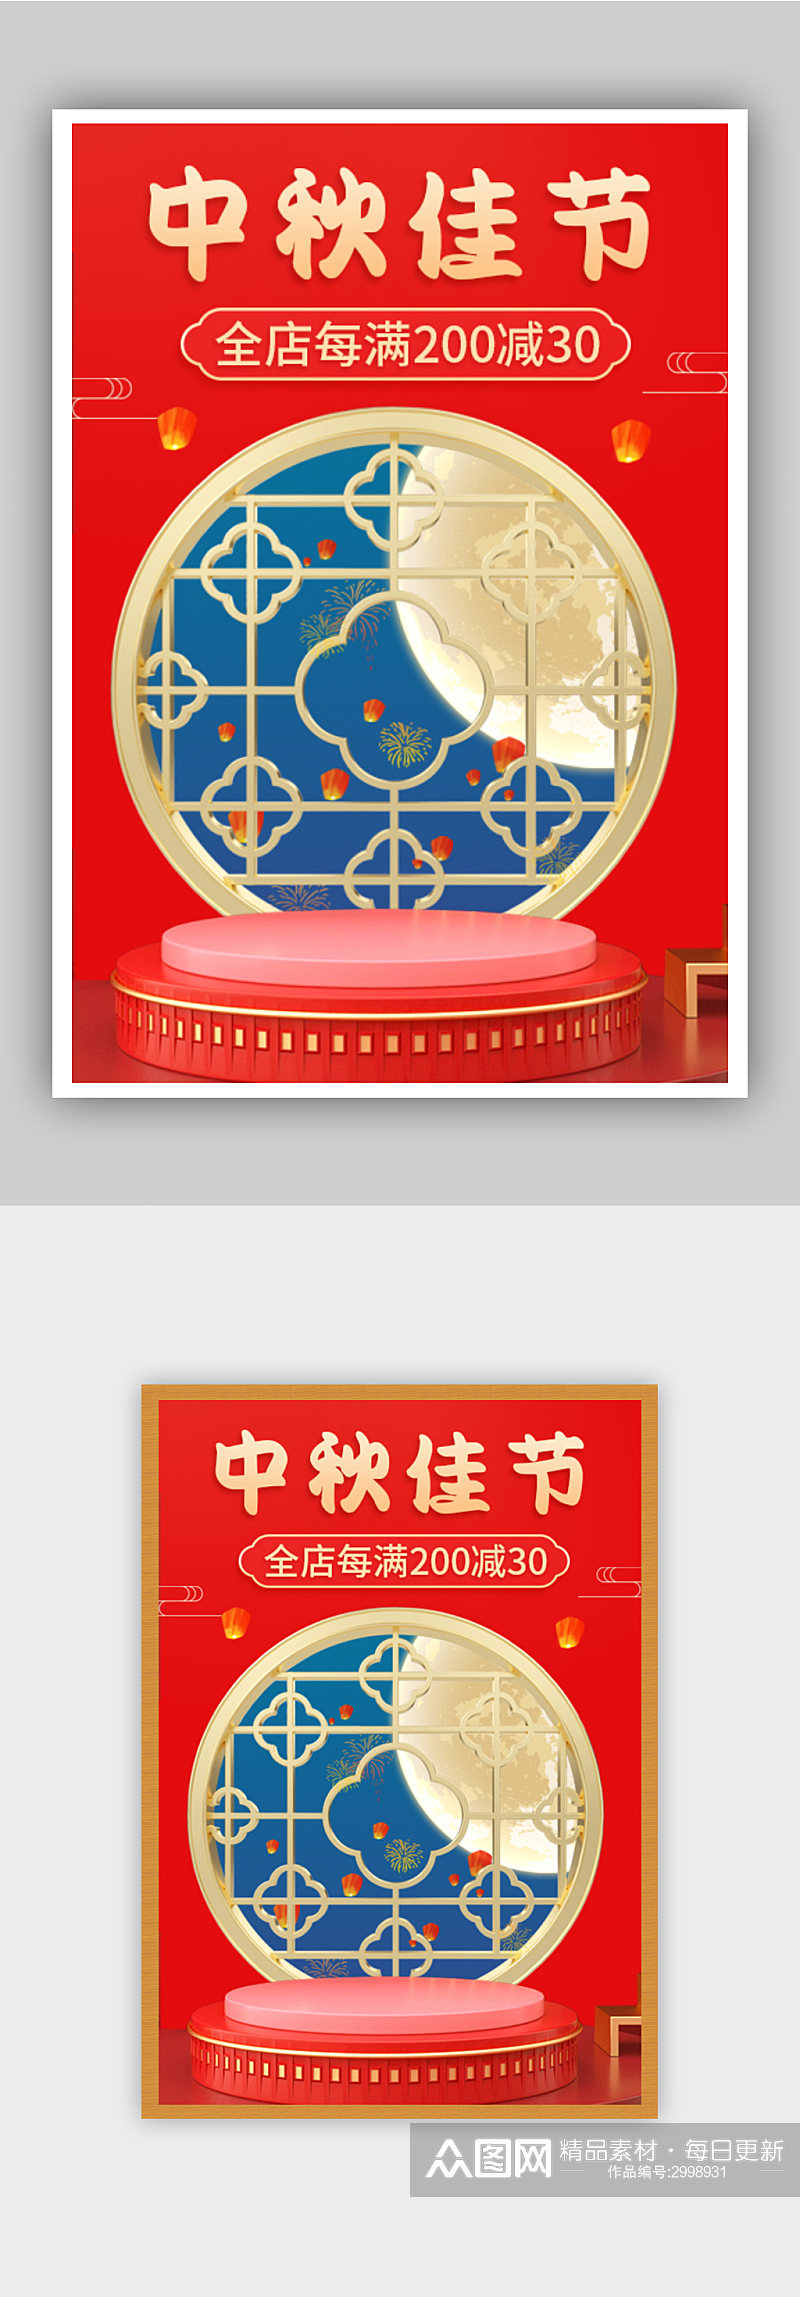 中秋节红色中国风年货节节日海报素材